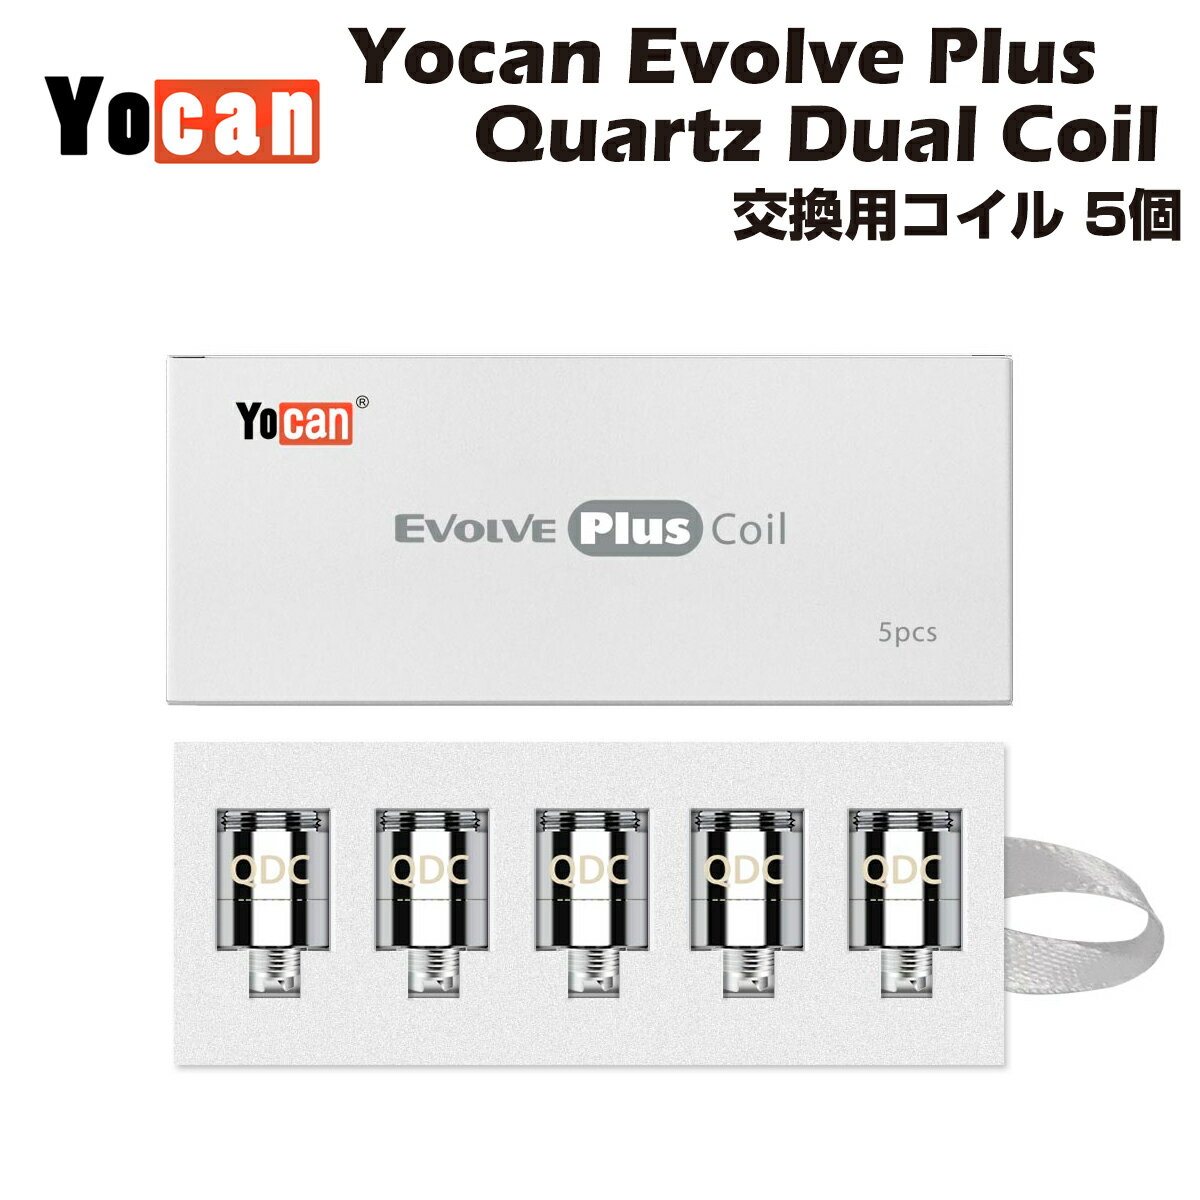 【送料無料】 Yocan Evolve Plus 交換用コイル 5個入 Quartz Dual Coil (QDC) クオーツ デュアル ワックス専用ヴェポライザー ユーキャン エボルブ プラス